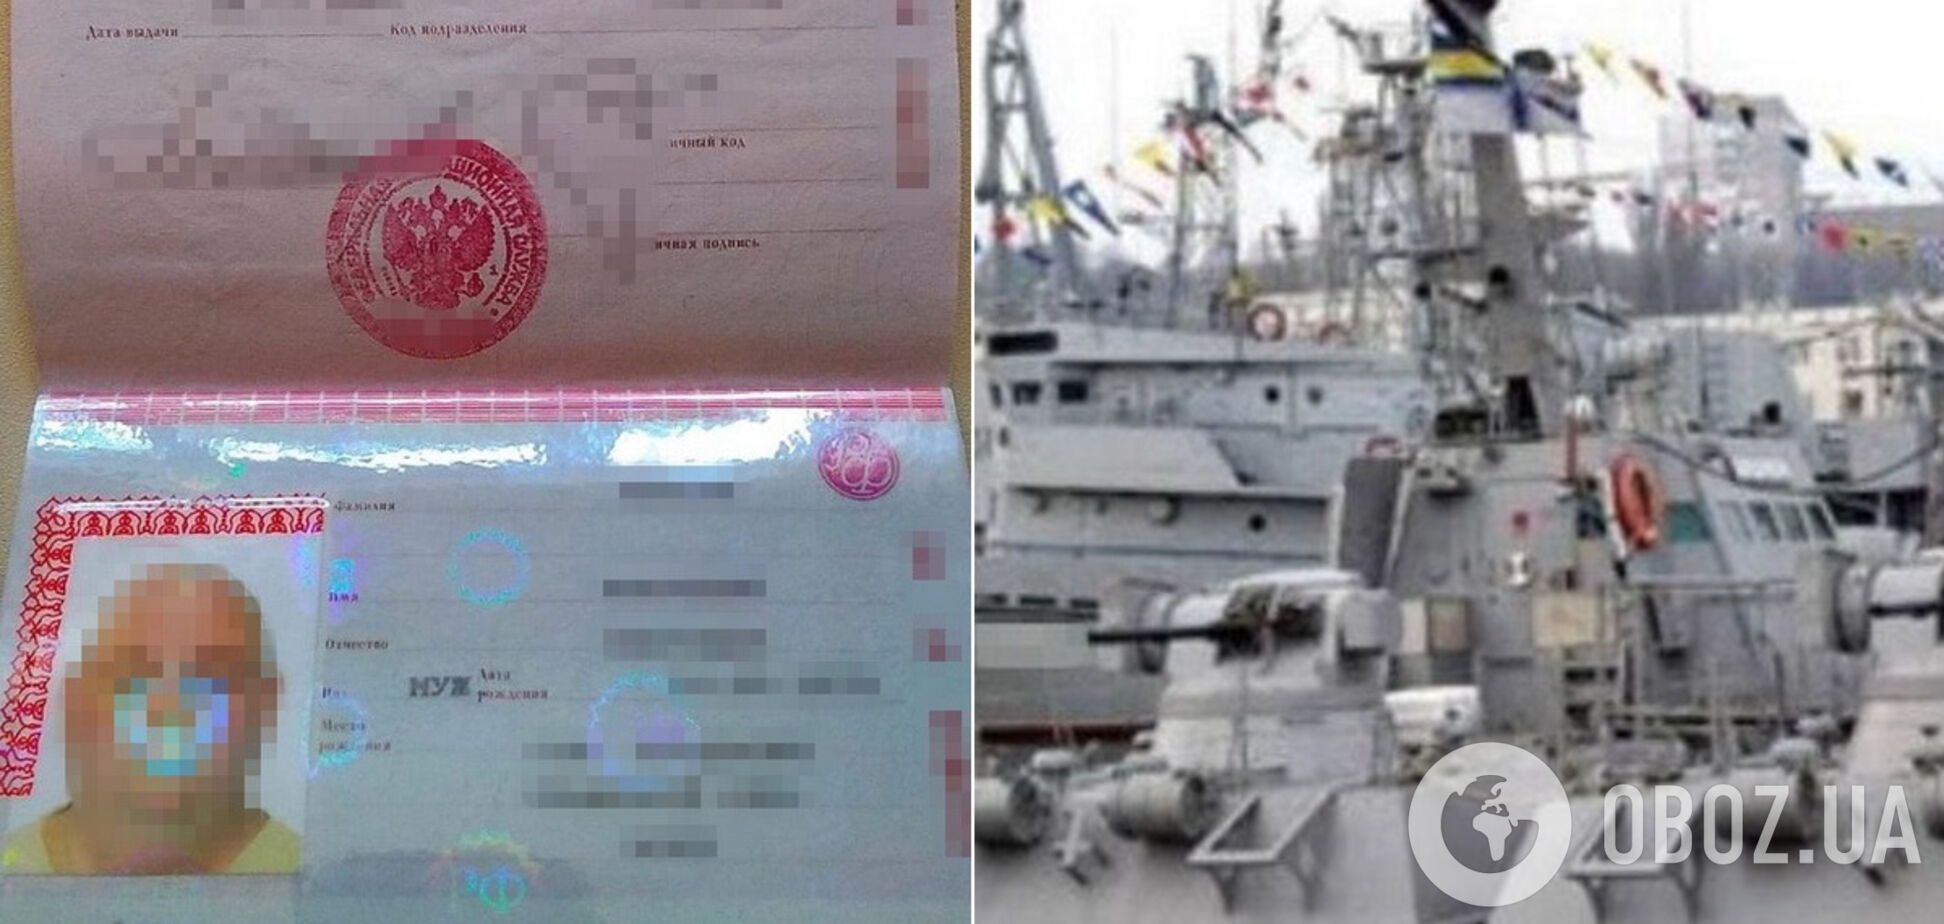 Командир військового корабля ВМС намагався здати Росії держтаємницю і втекти до Криму